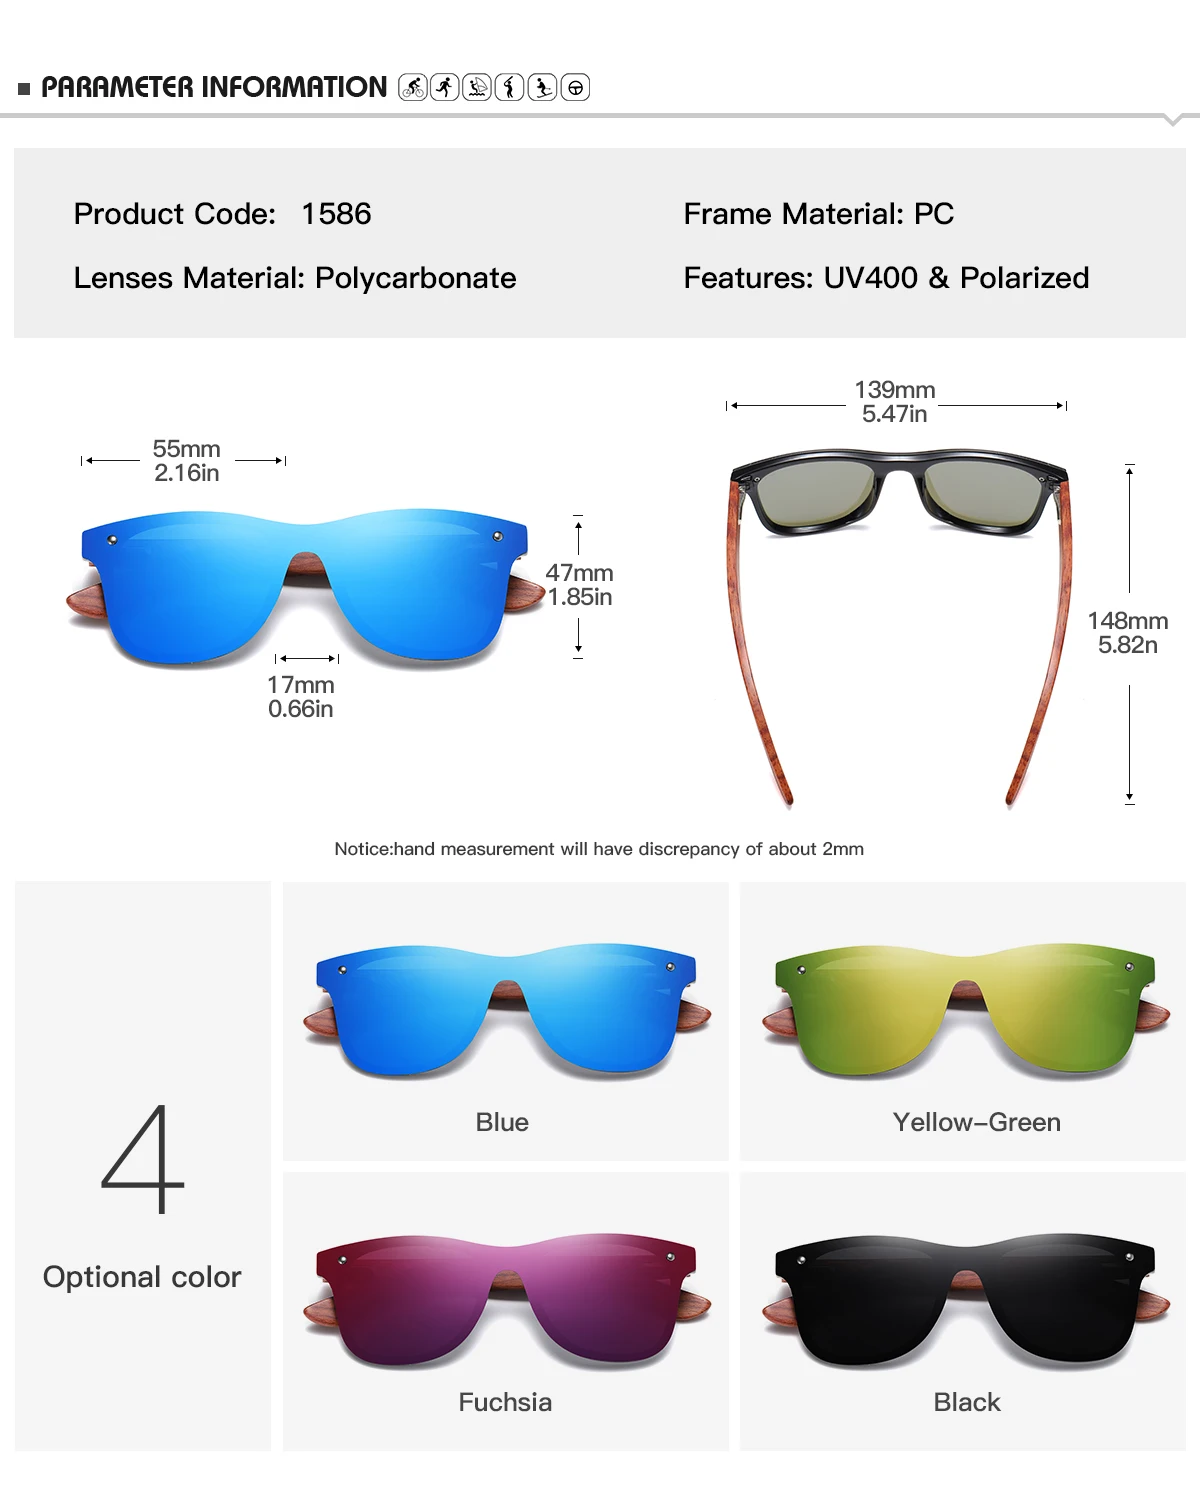 DEARMILIU, мужские солнцезащитные очки, поляризационные, ореховое дерево, зеркальные линзы, солнцезащитные очки для женщин, фирменный дизайн, цветные оттенки, ручная работа